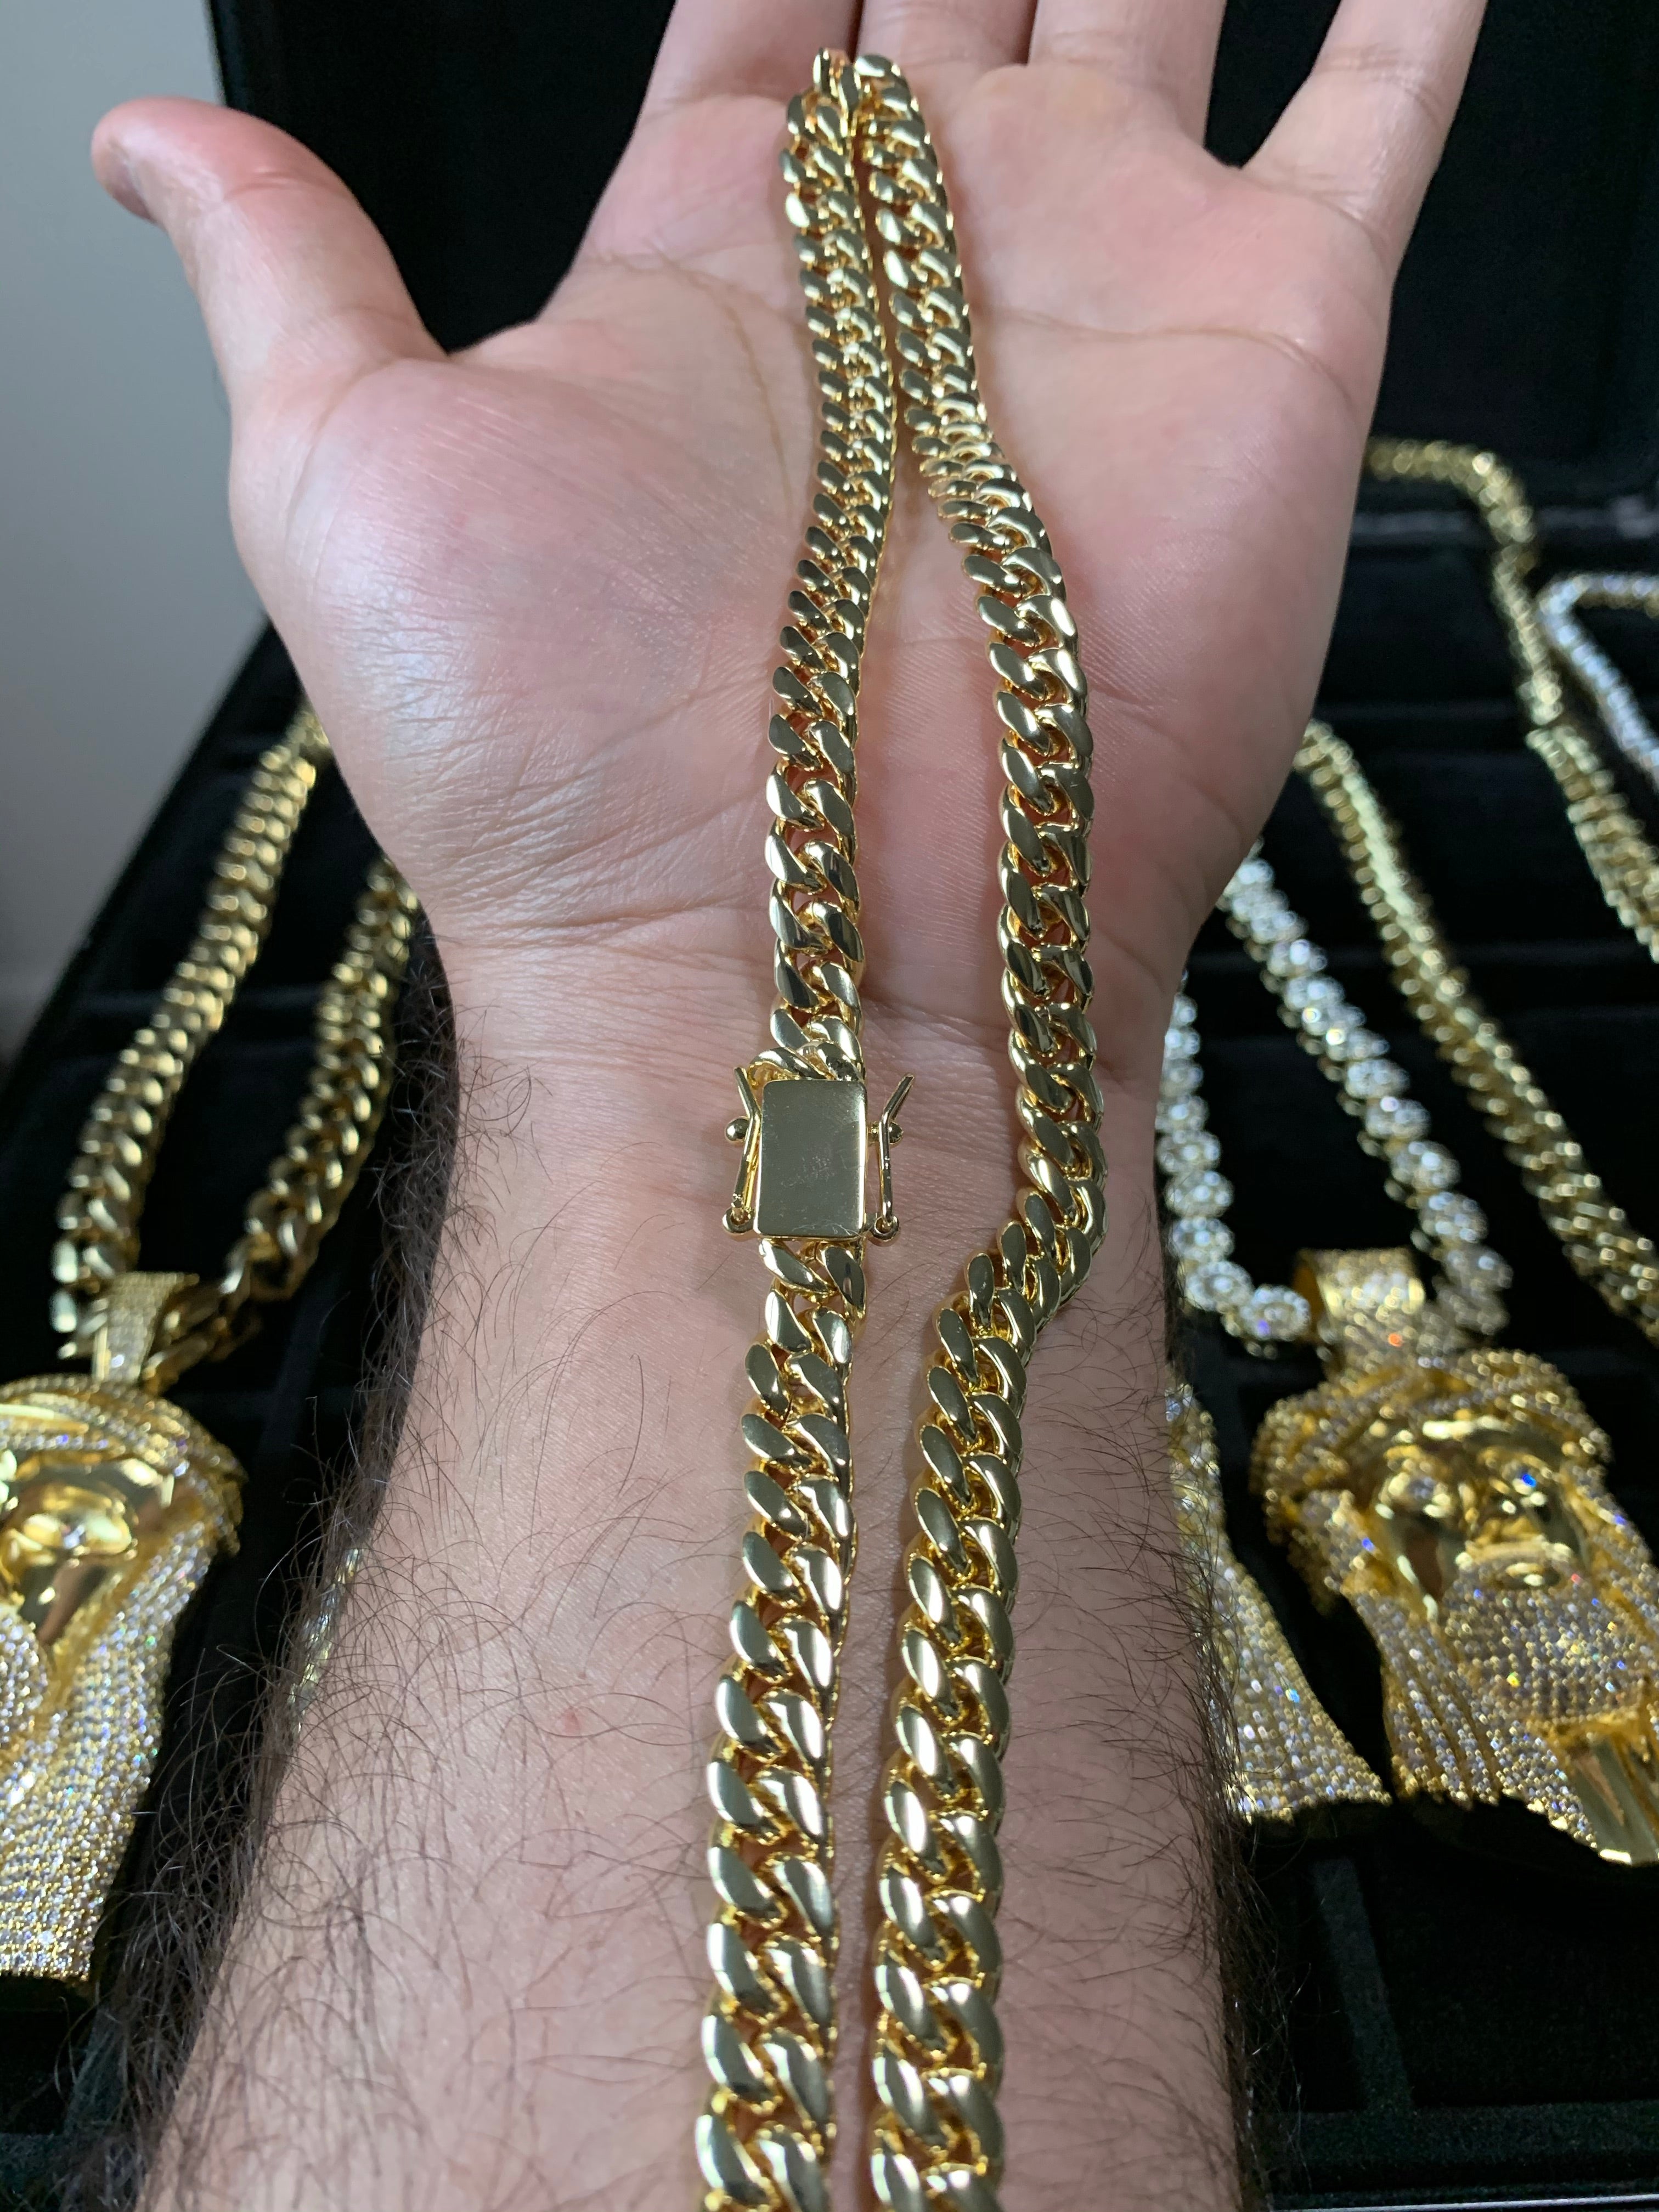 8mm cuban chain and bracelet set